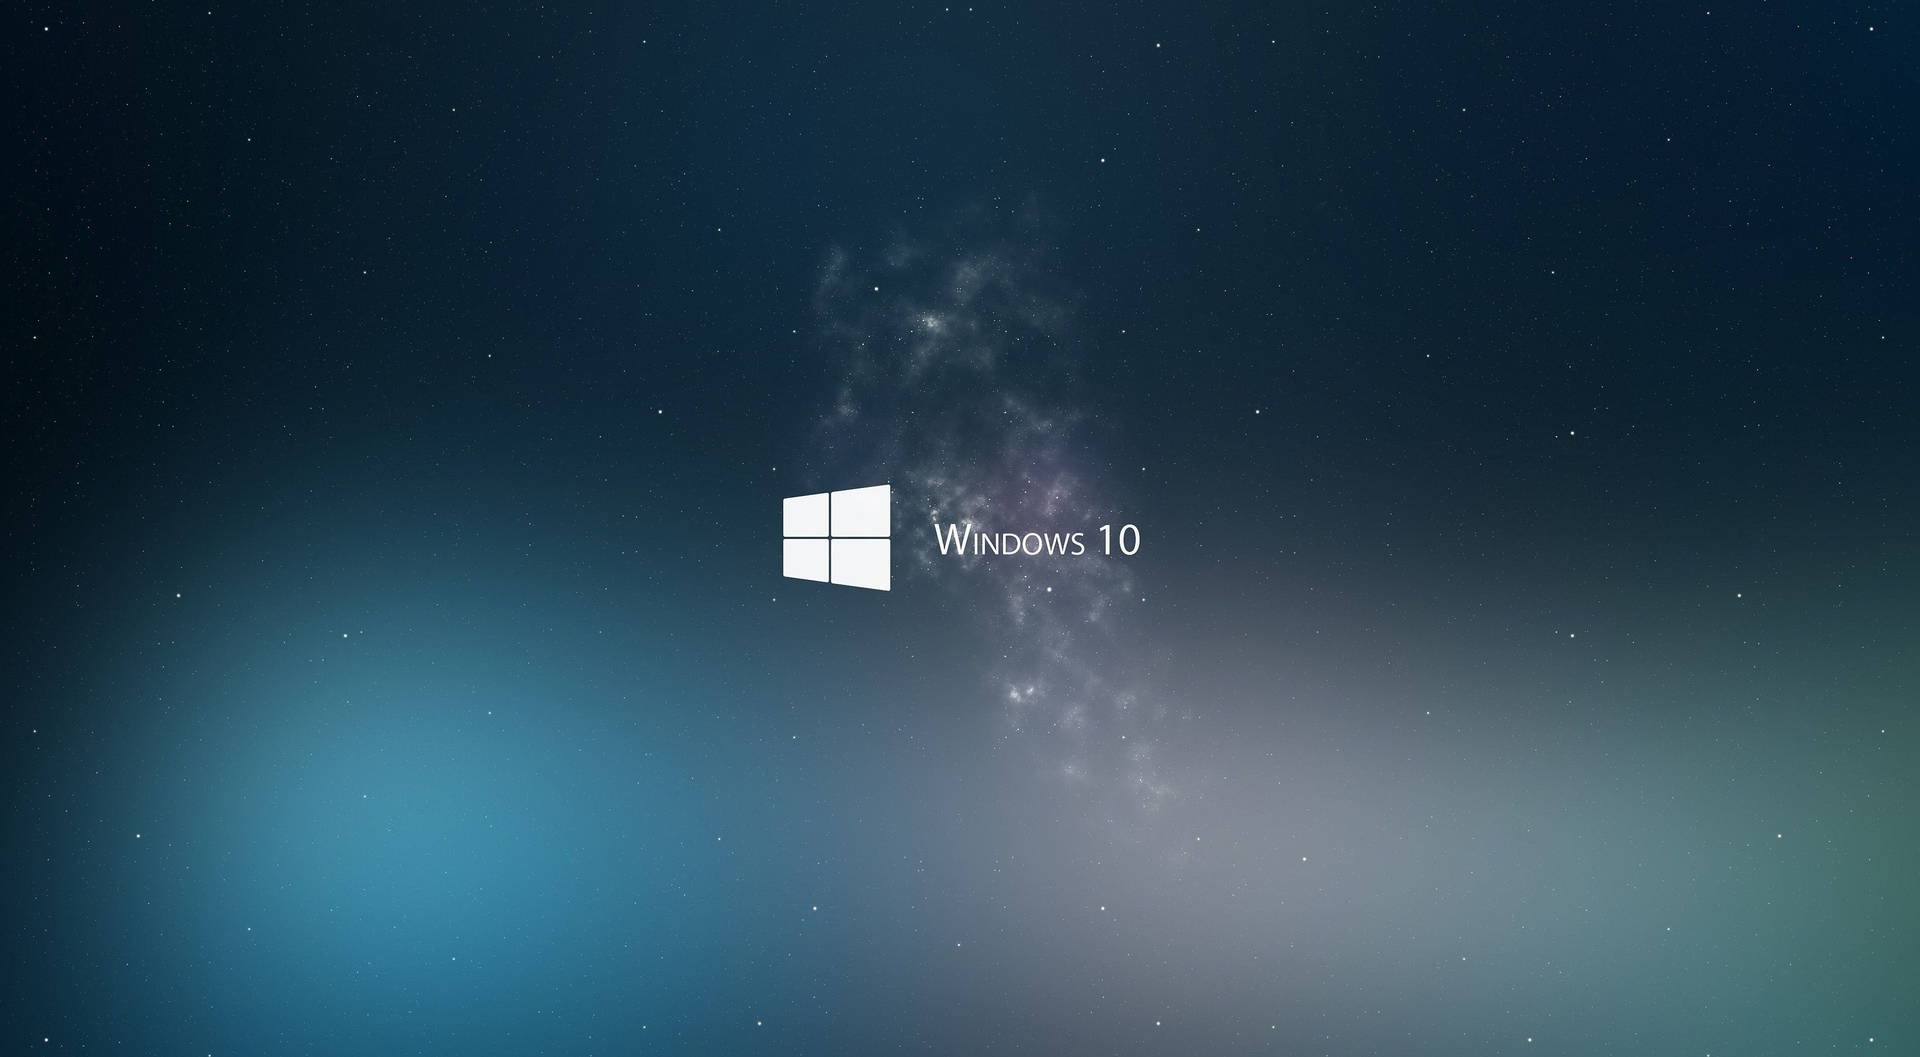 Windows 10 Flat White Clean 4K Wallpaper